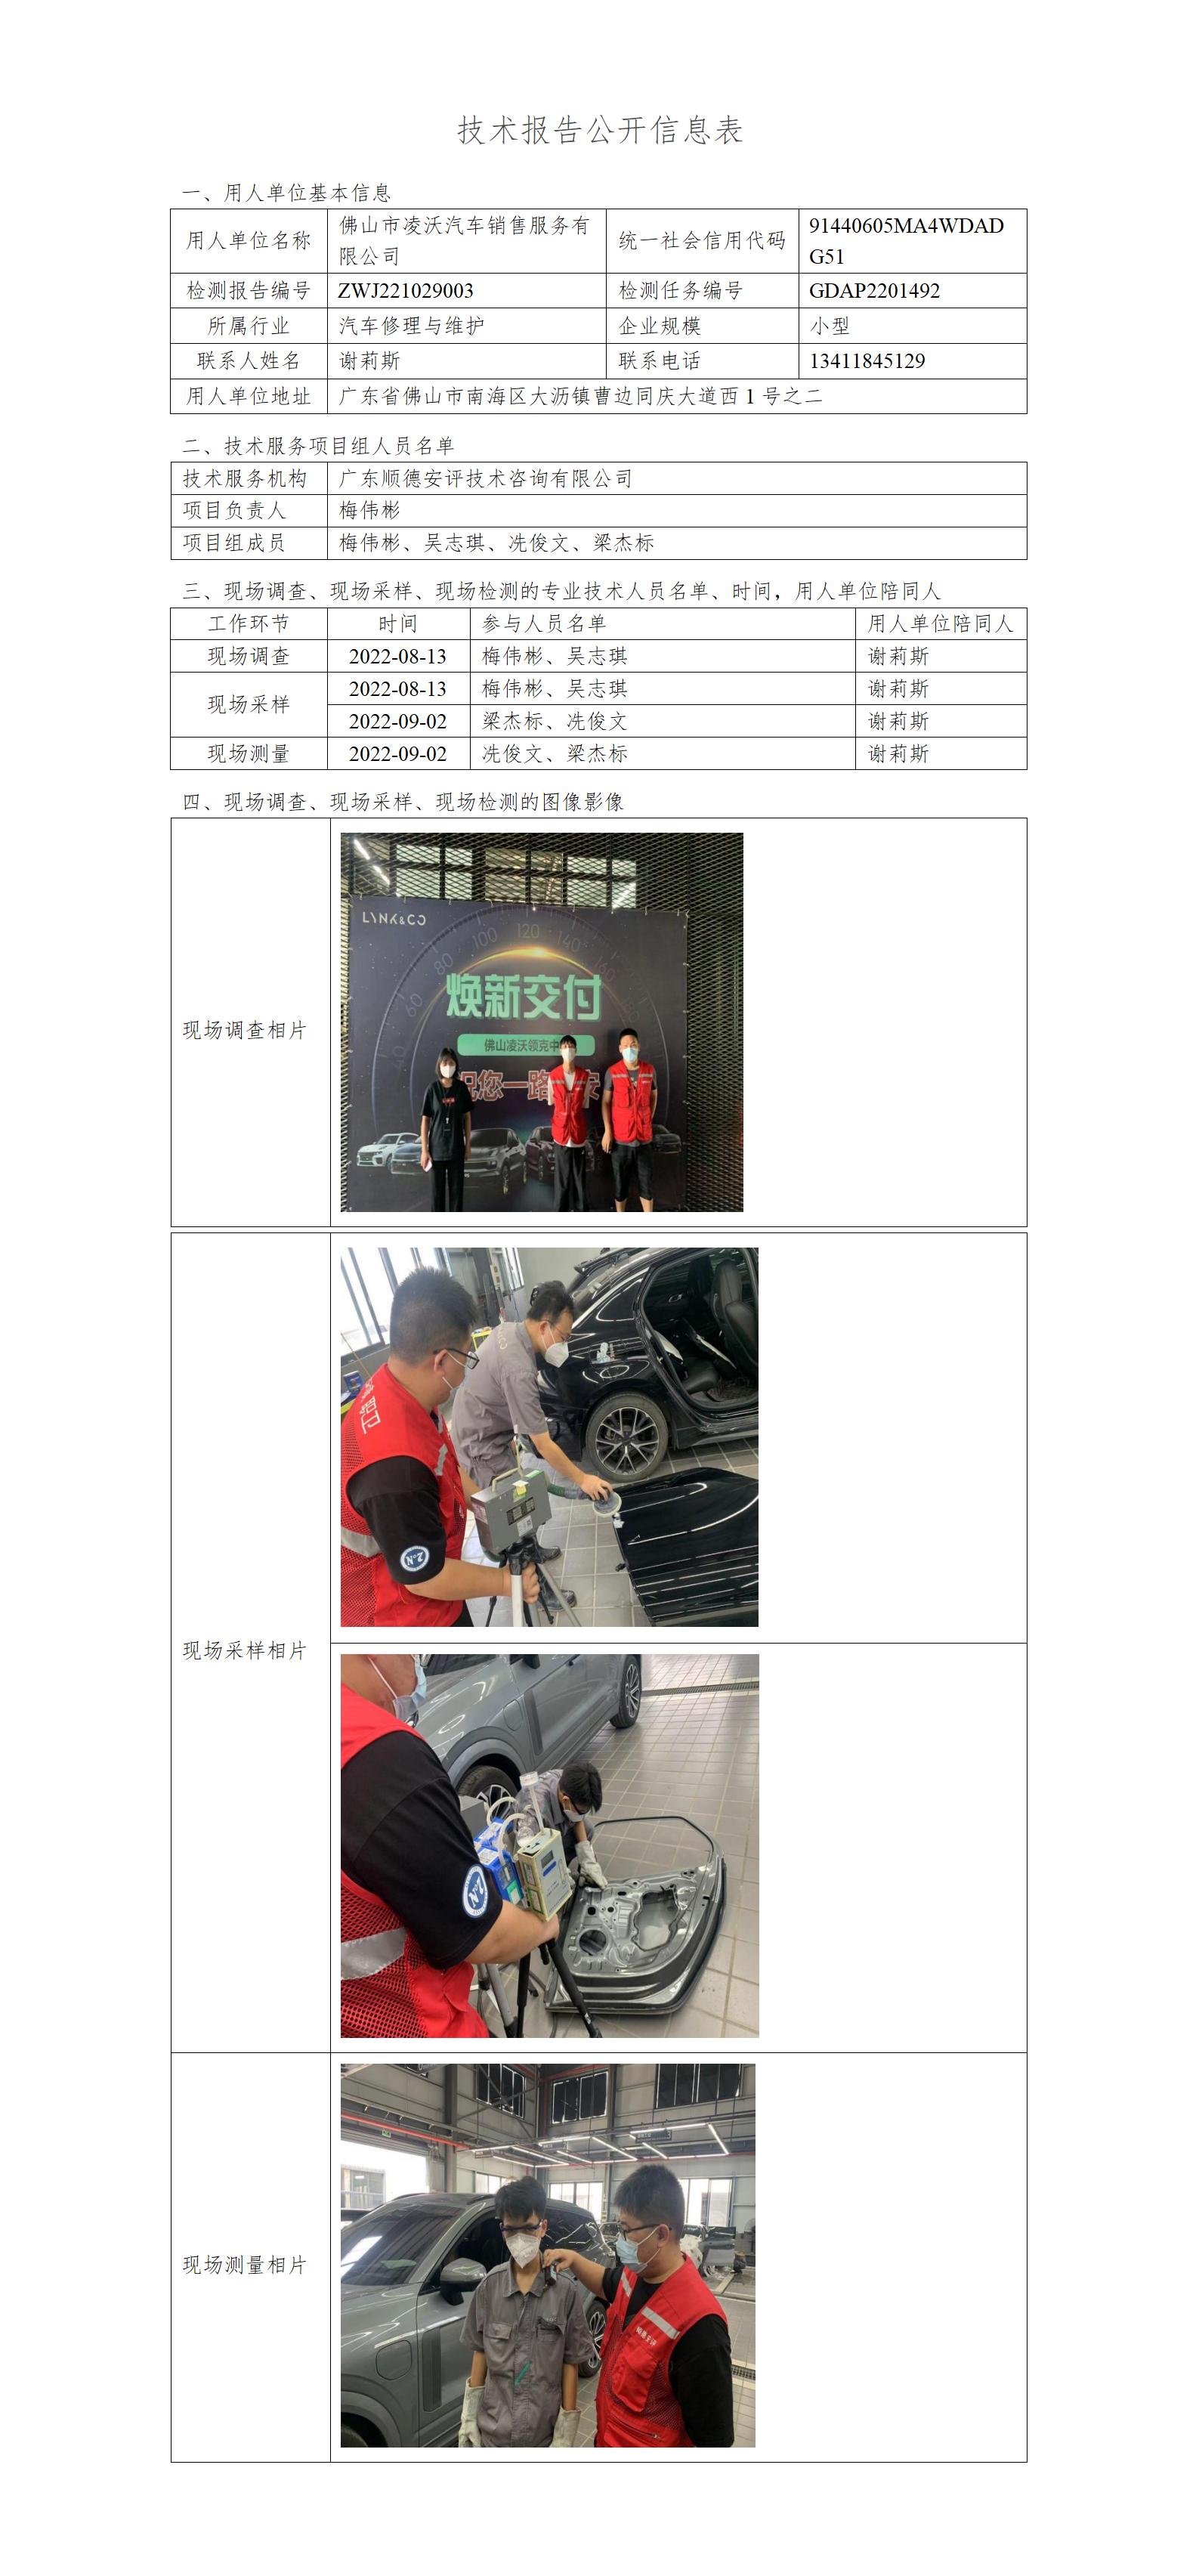 佛山市凌沃汽车销售服务有限公司-2022-技术报告公开信息表_01.jpg